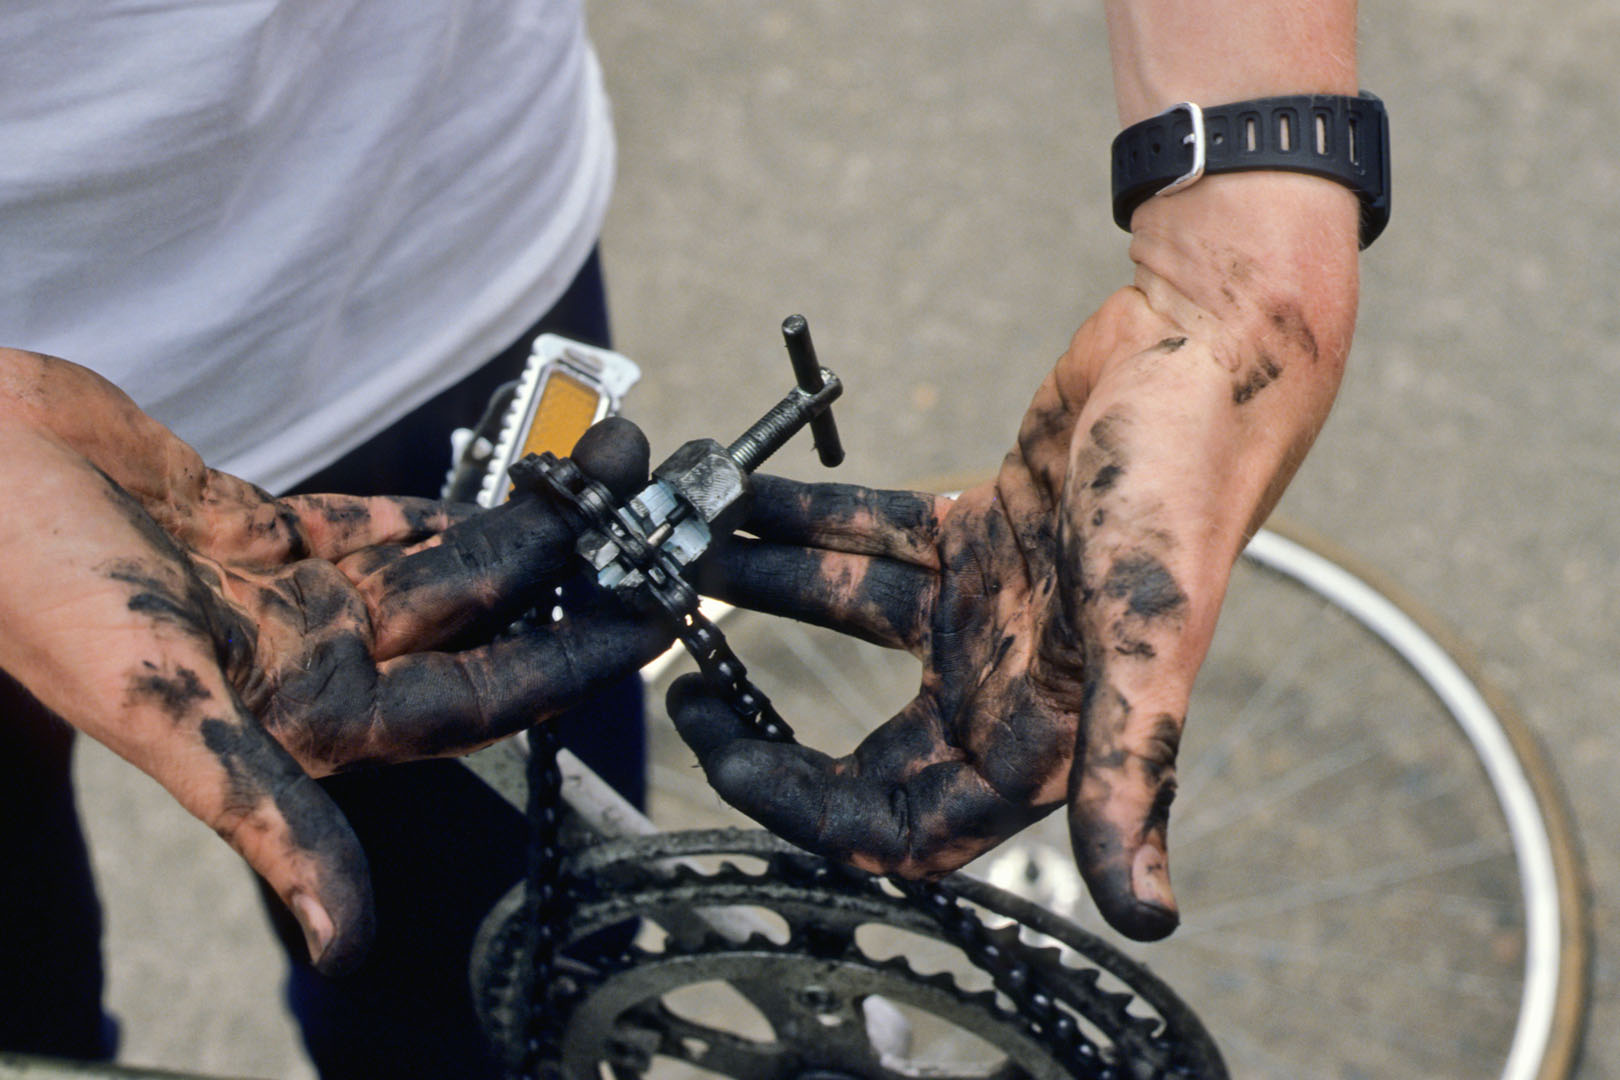 Filthy bike repair hands.